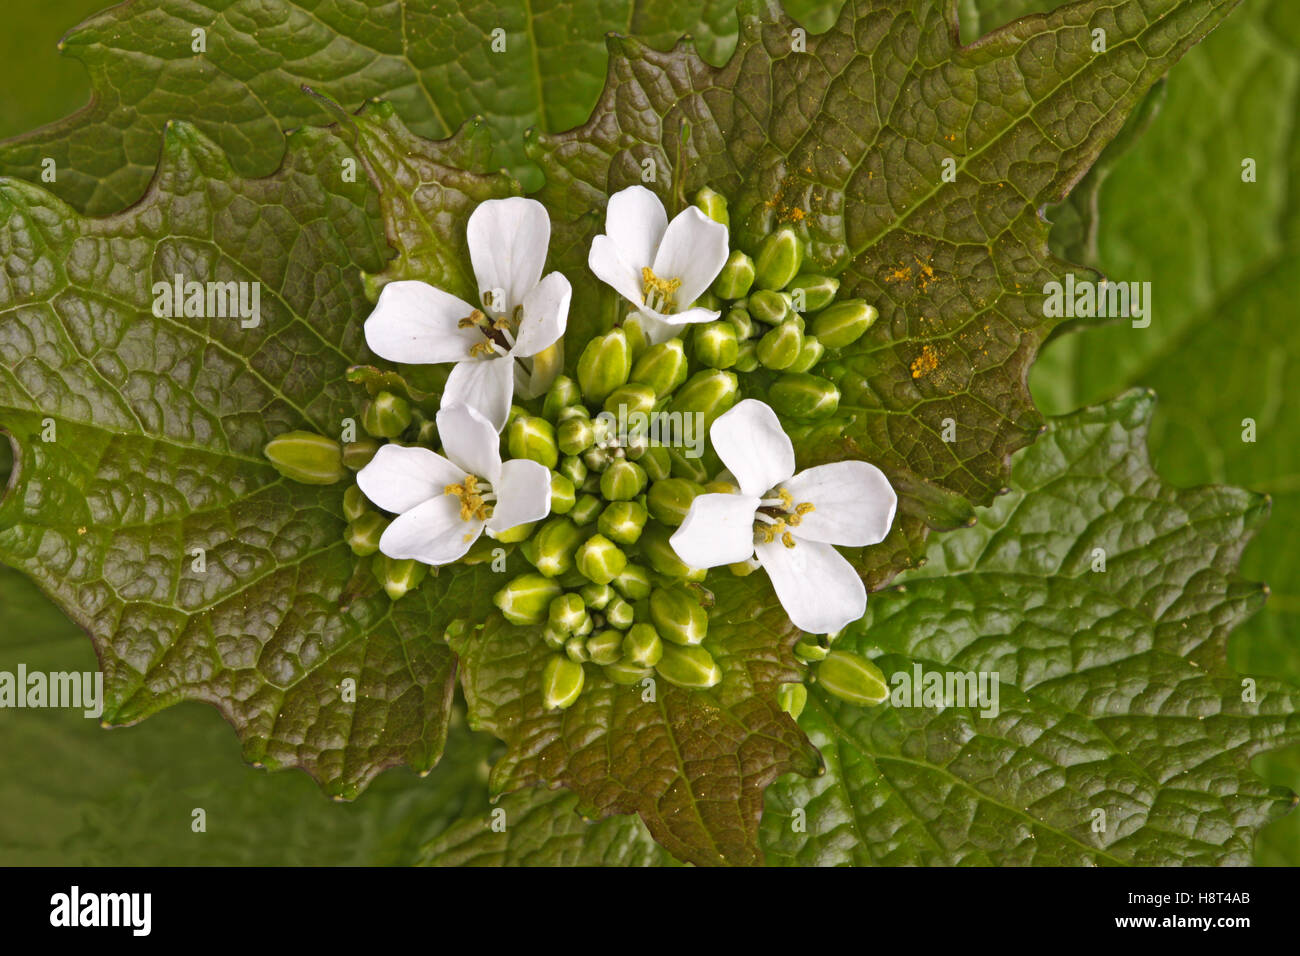 Verticilos de hojas verdes y flores blancas de la hierba bienal ajo mostaza (Alliaria petiolata) en la familia Brassicaceae Foto de stock